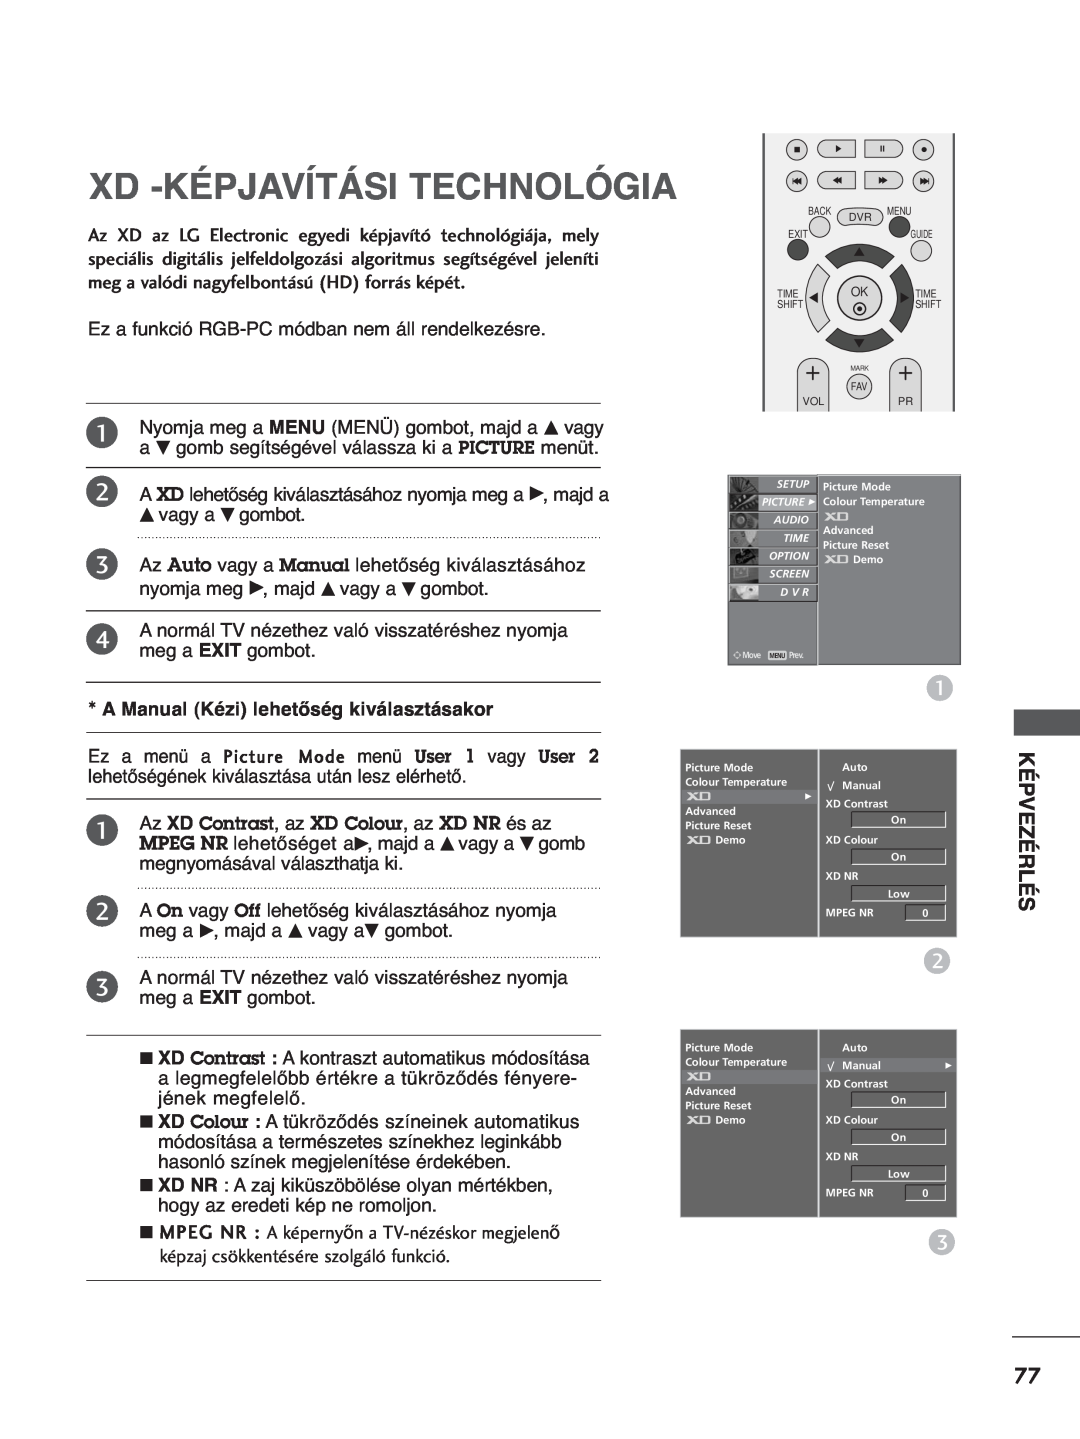 LG Electronics 4422LLTT77, 3377LLTT77 Xd -Képjavítási Technológia, Képvezérlés, A Manual Kézi lehetőség kiválasztásakor 